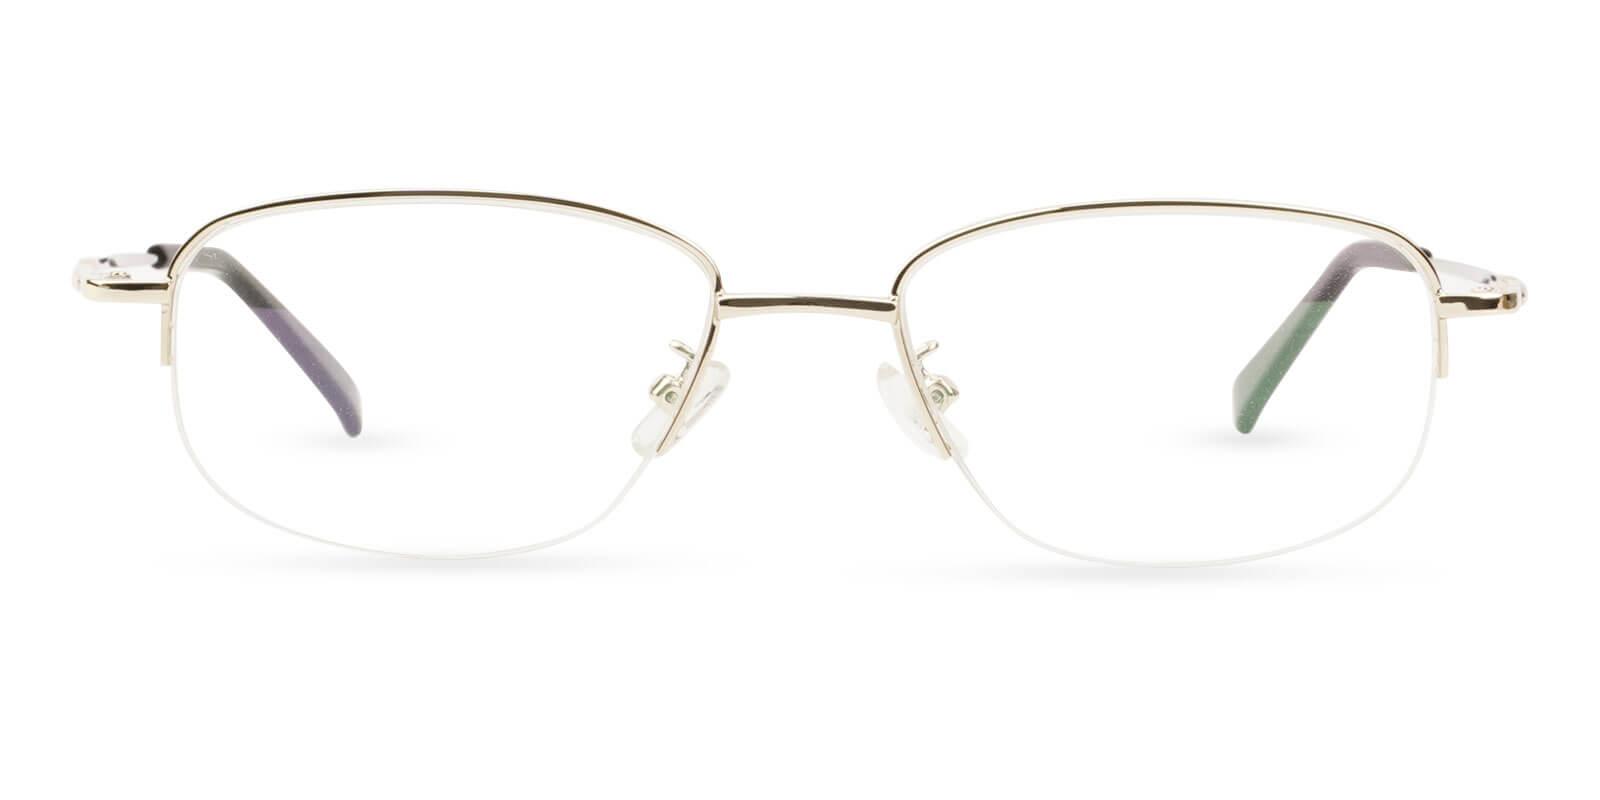 Joshua Gold Metal Eyeglasses , NosePads Frames from ABBE Glasses